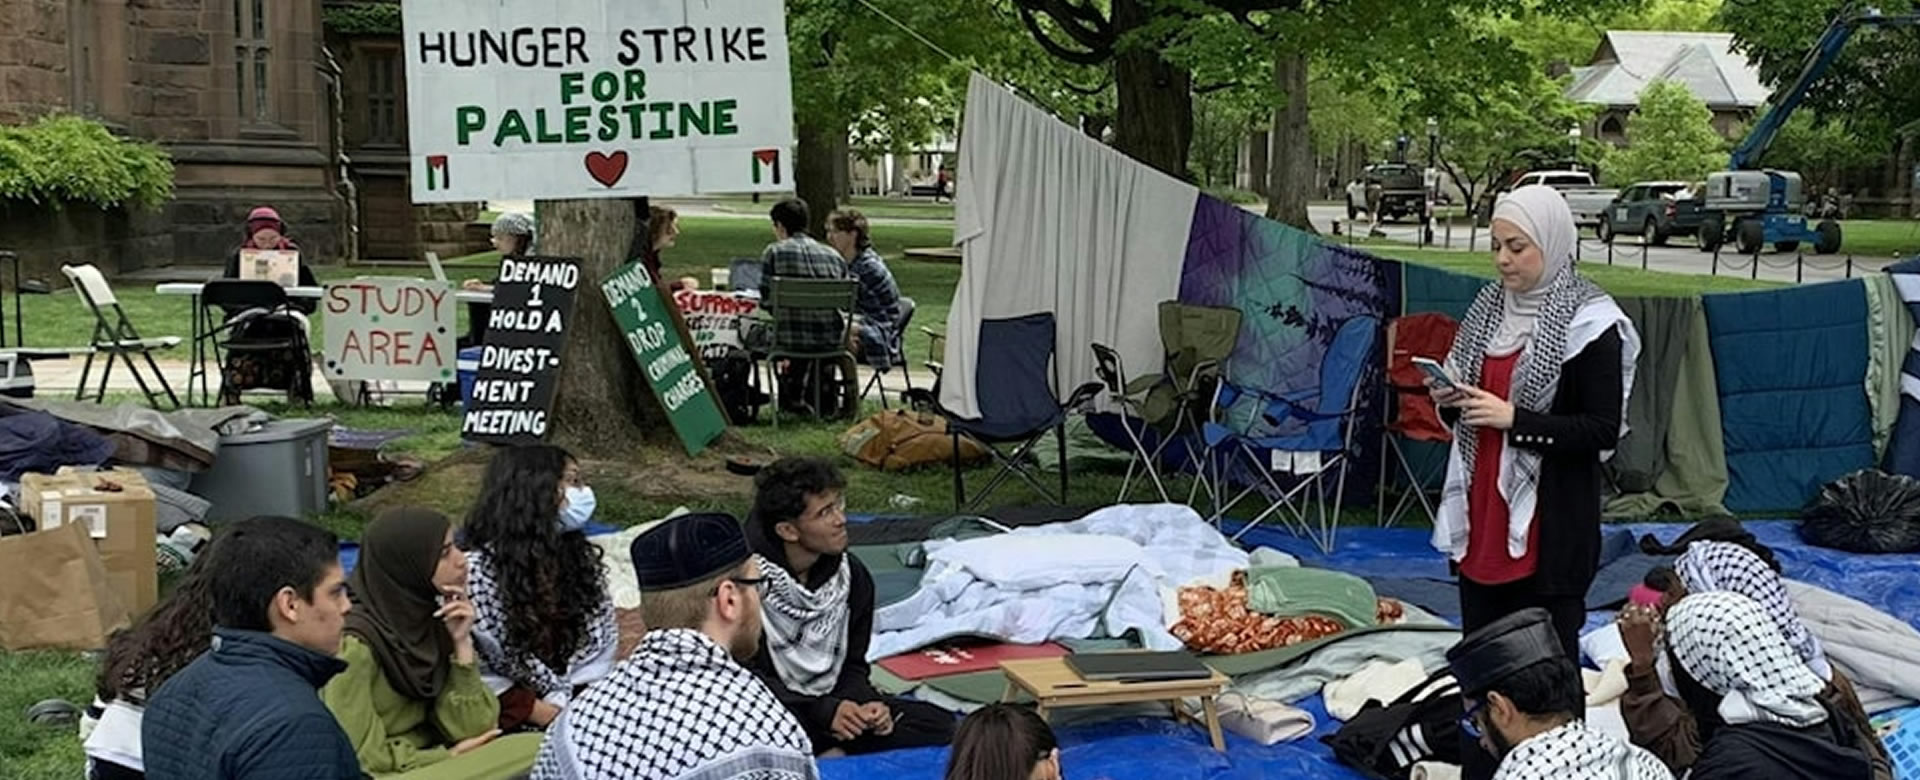 estudiantes huelga hambre gaza